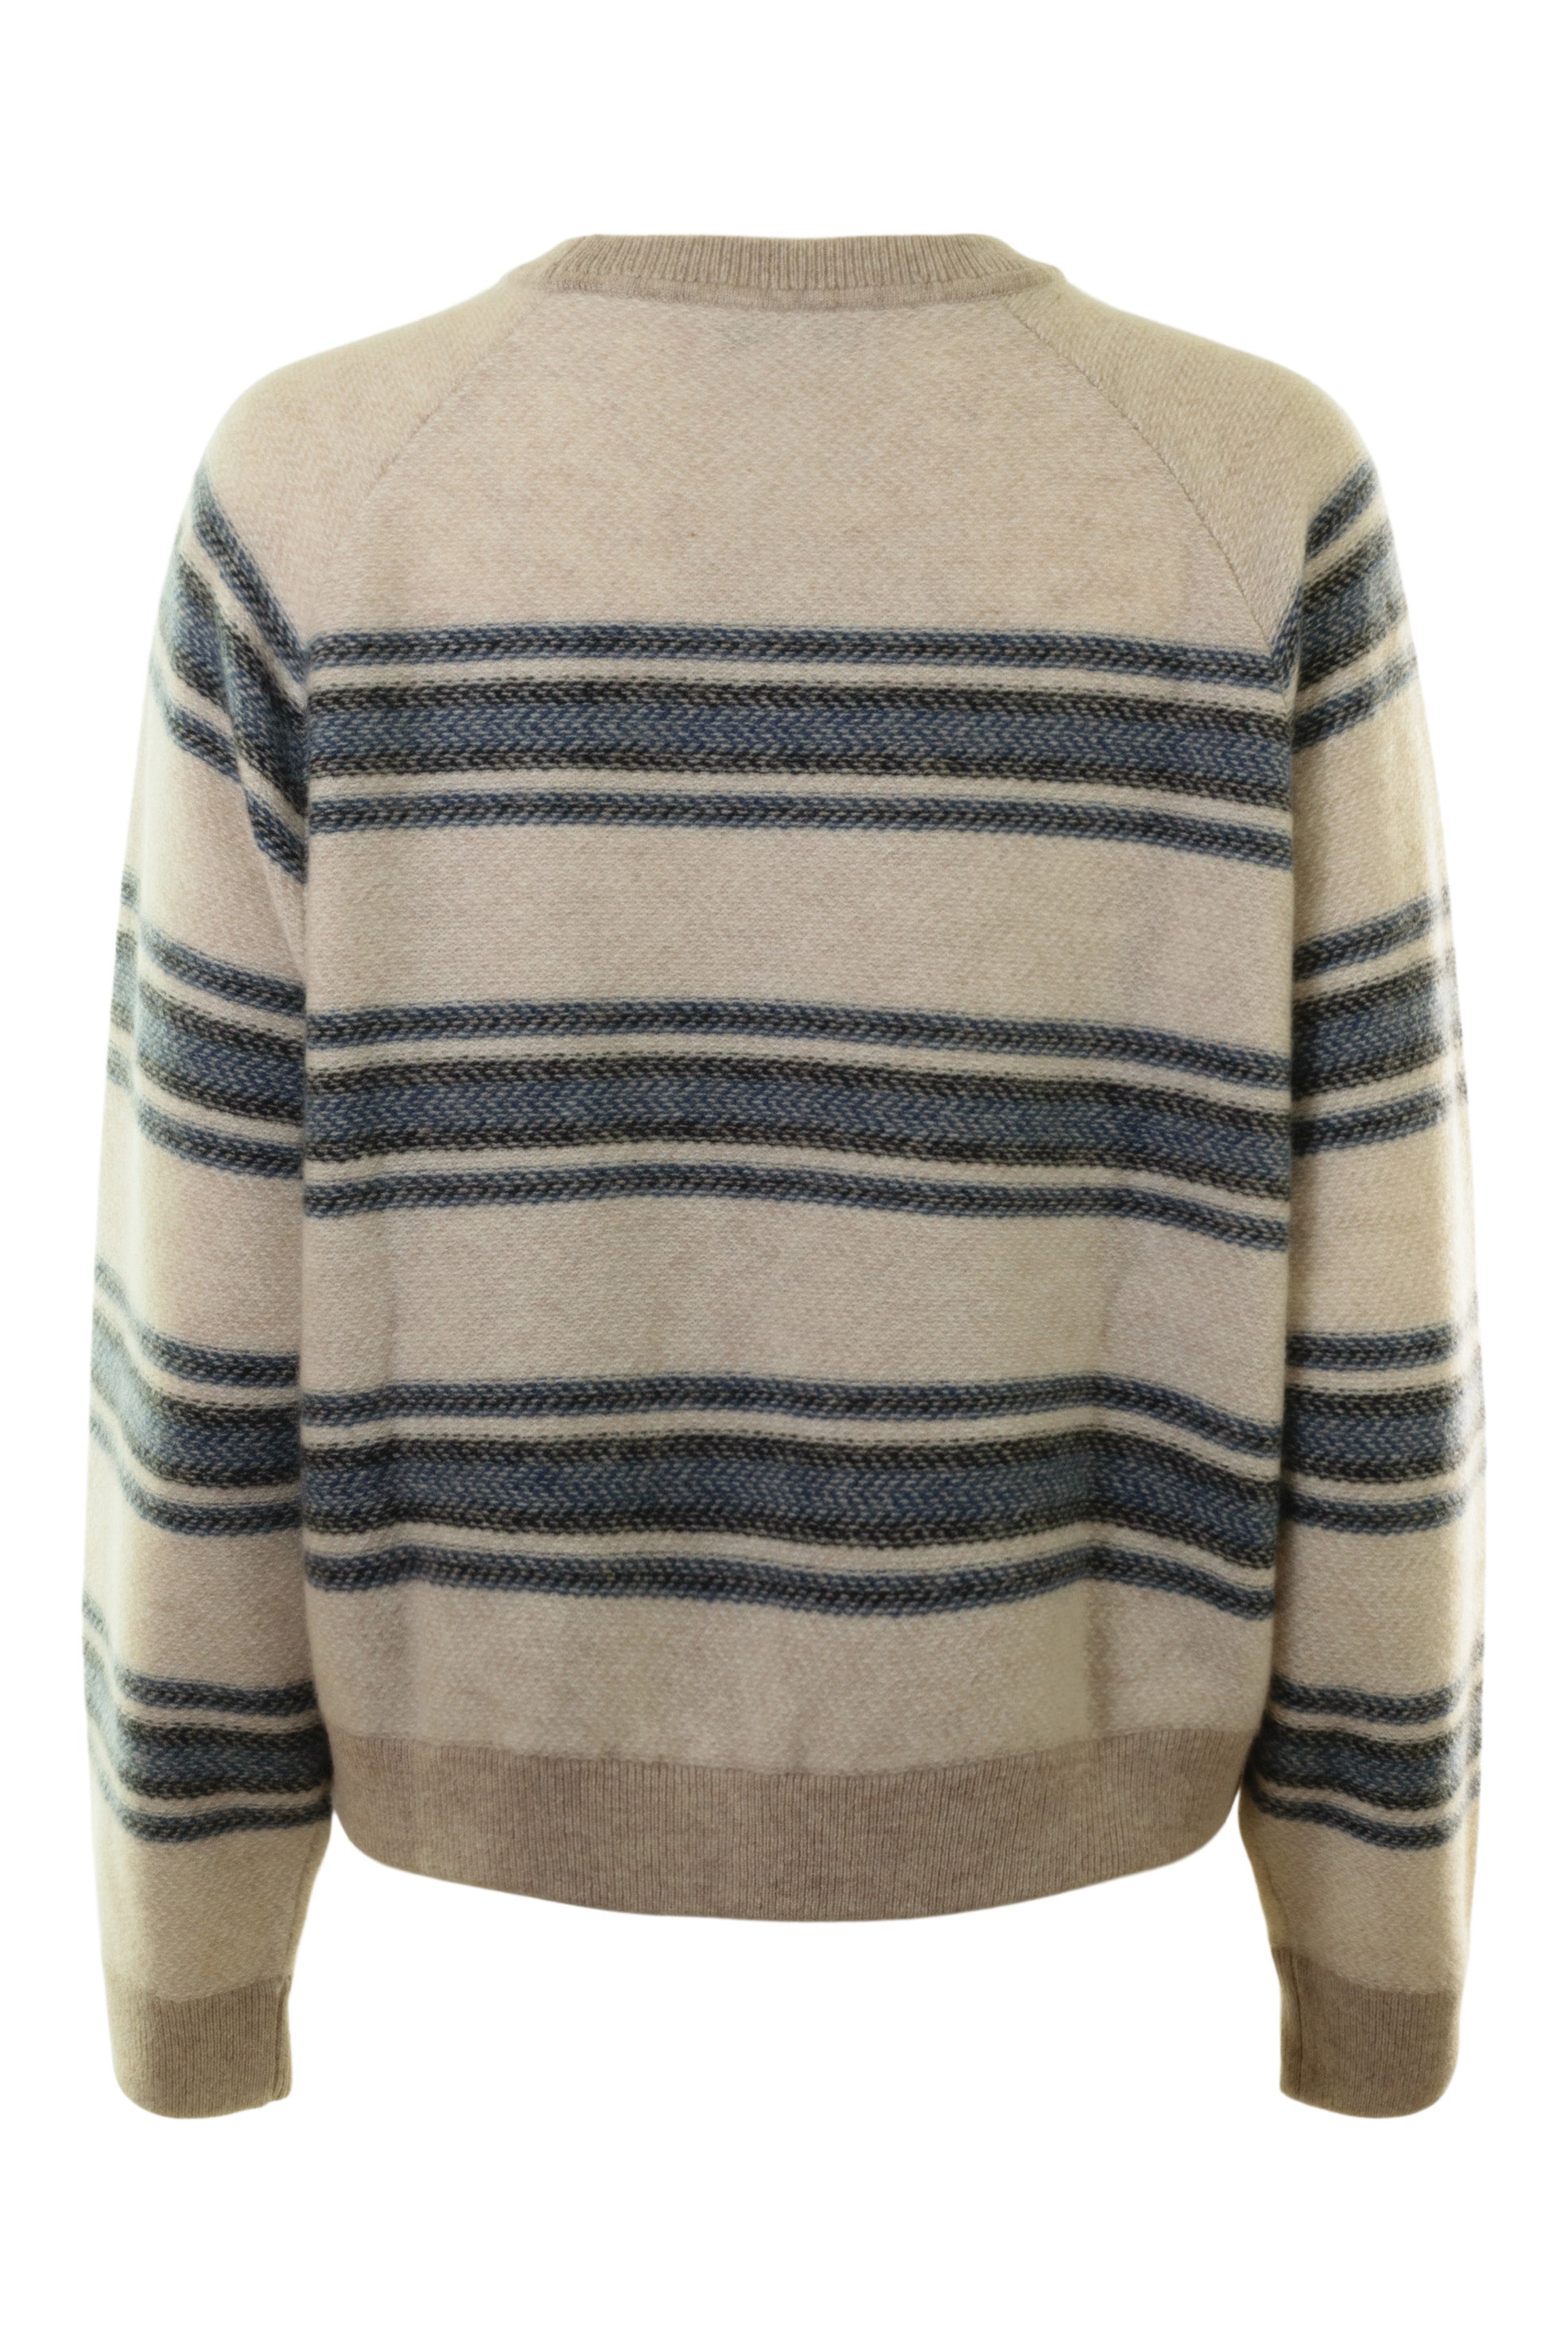 White & Warren Cashmere Blanket Stripe Sweater